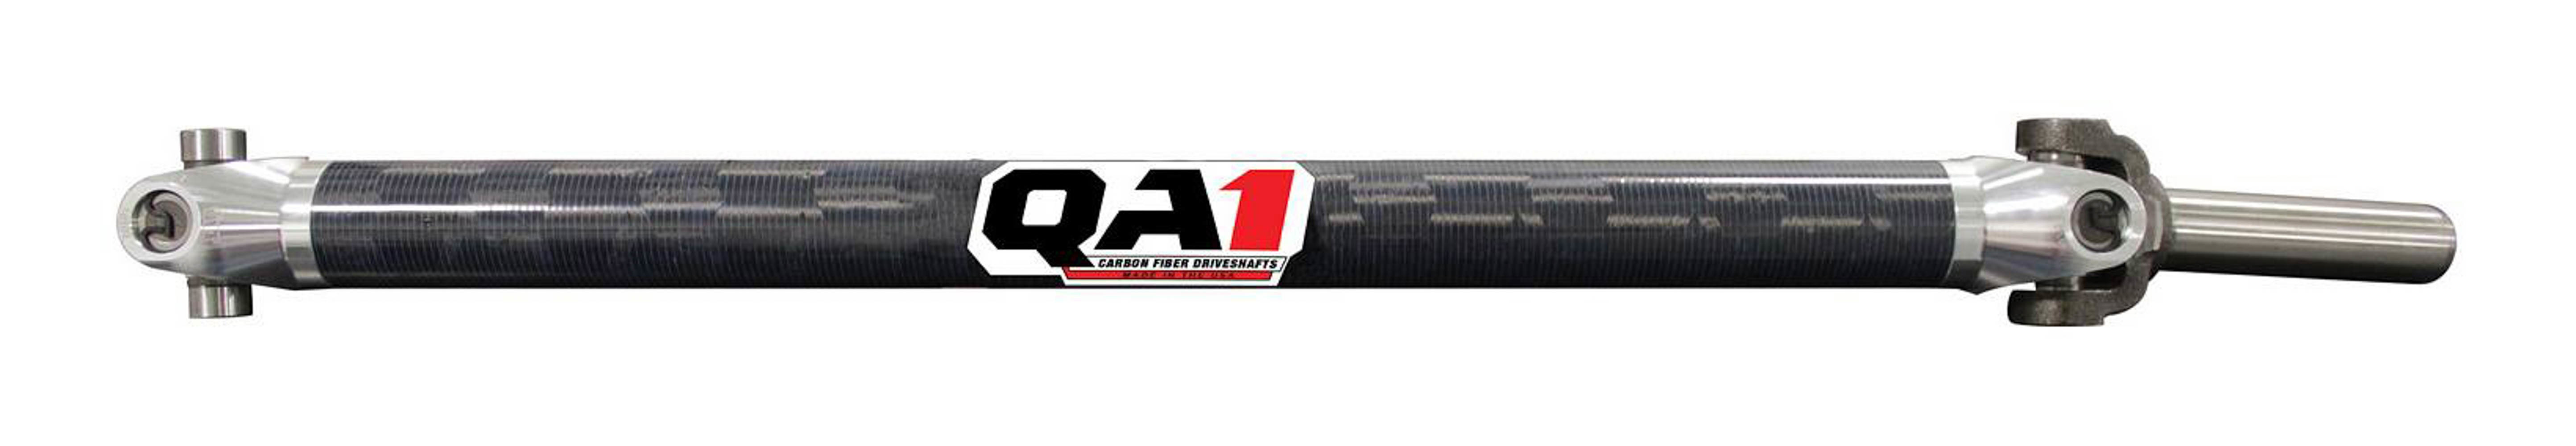 QA1 JJ-12207 Drive Shaft, Dirt Modified, 32 in Long, 2.25 in OD, 1310 U-Joints, 8 in Slip Yoke, Carbon Fiber, Universal, Each